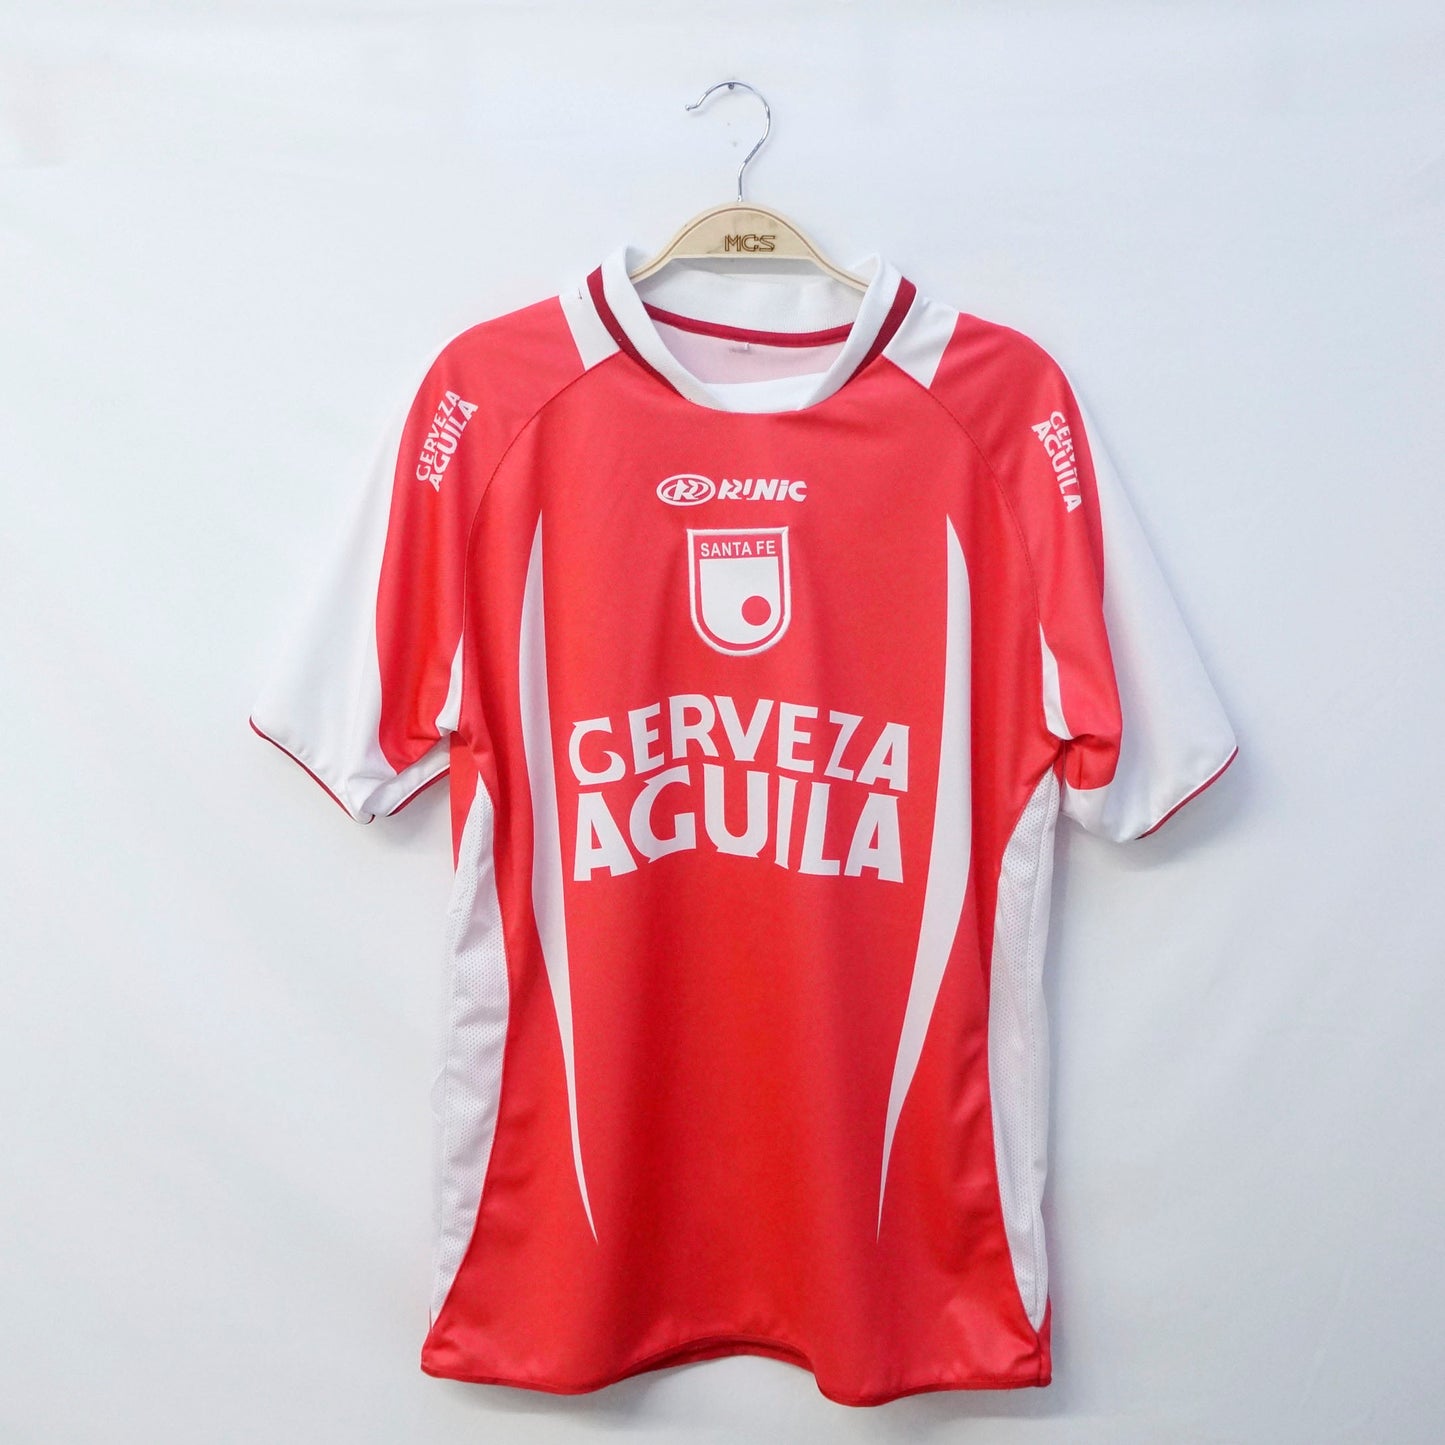 Camiseta Independiente Santa Fe Runic 2003